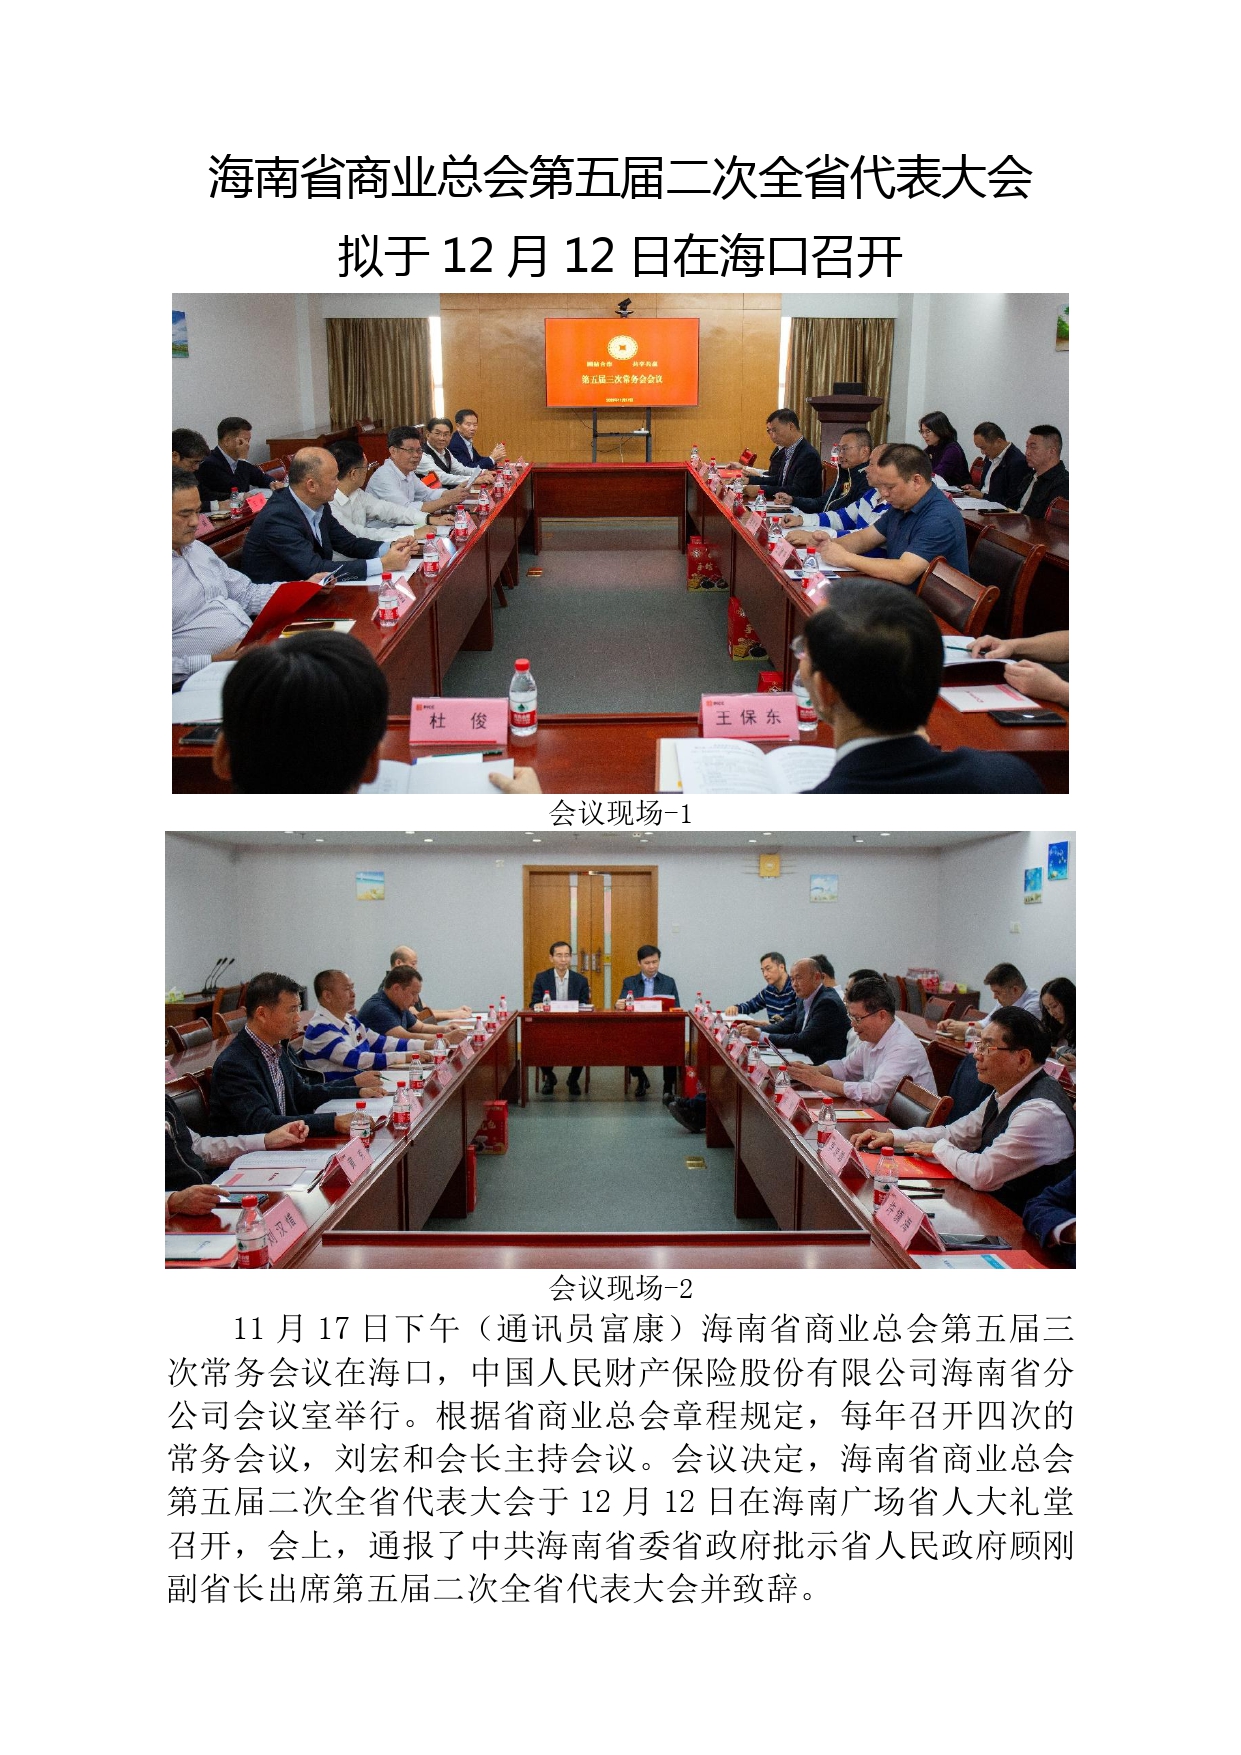 海南省商业总会第五届二次全省代表大会拟于12月12日在海口召开。_page-0001.jpg